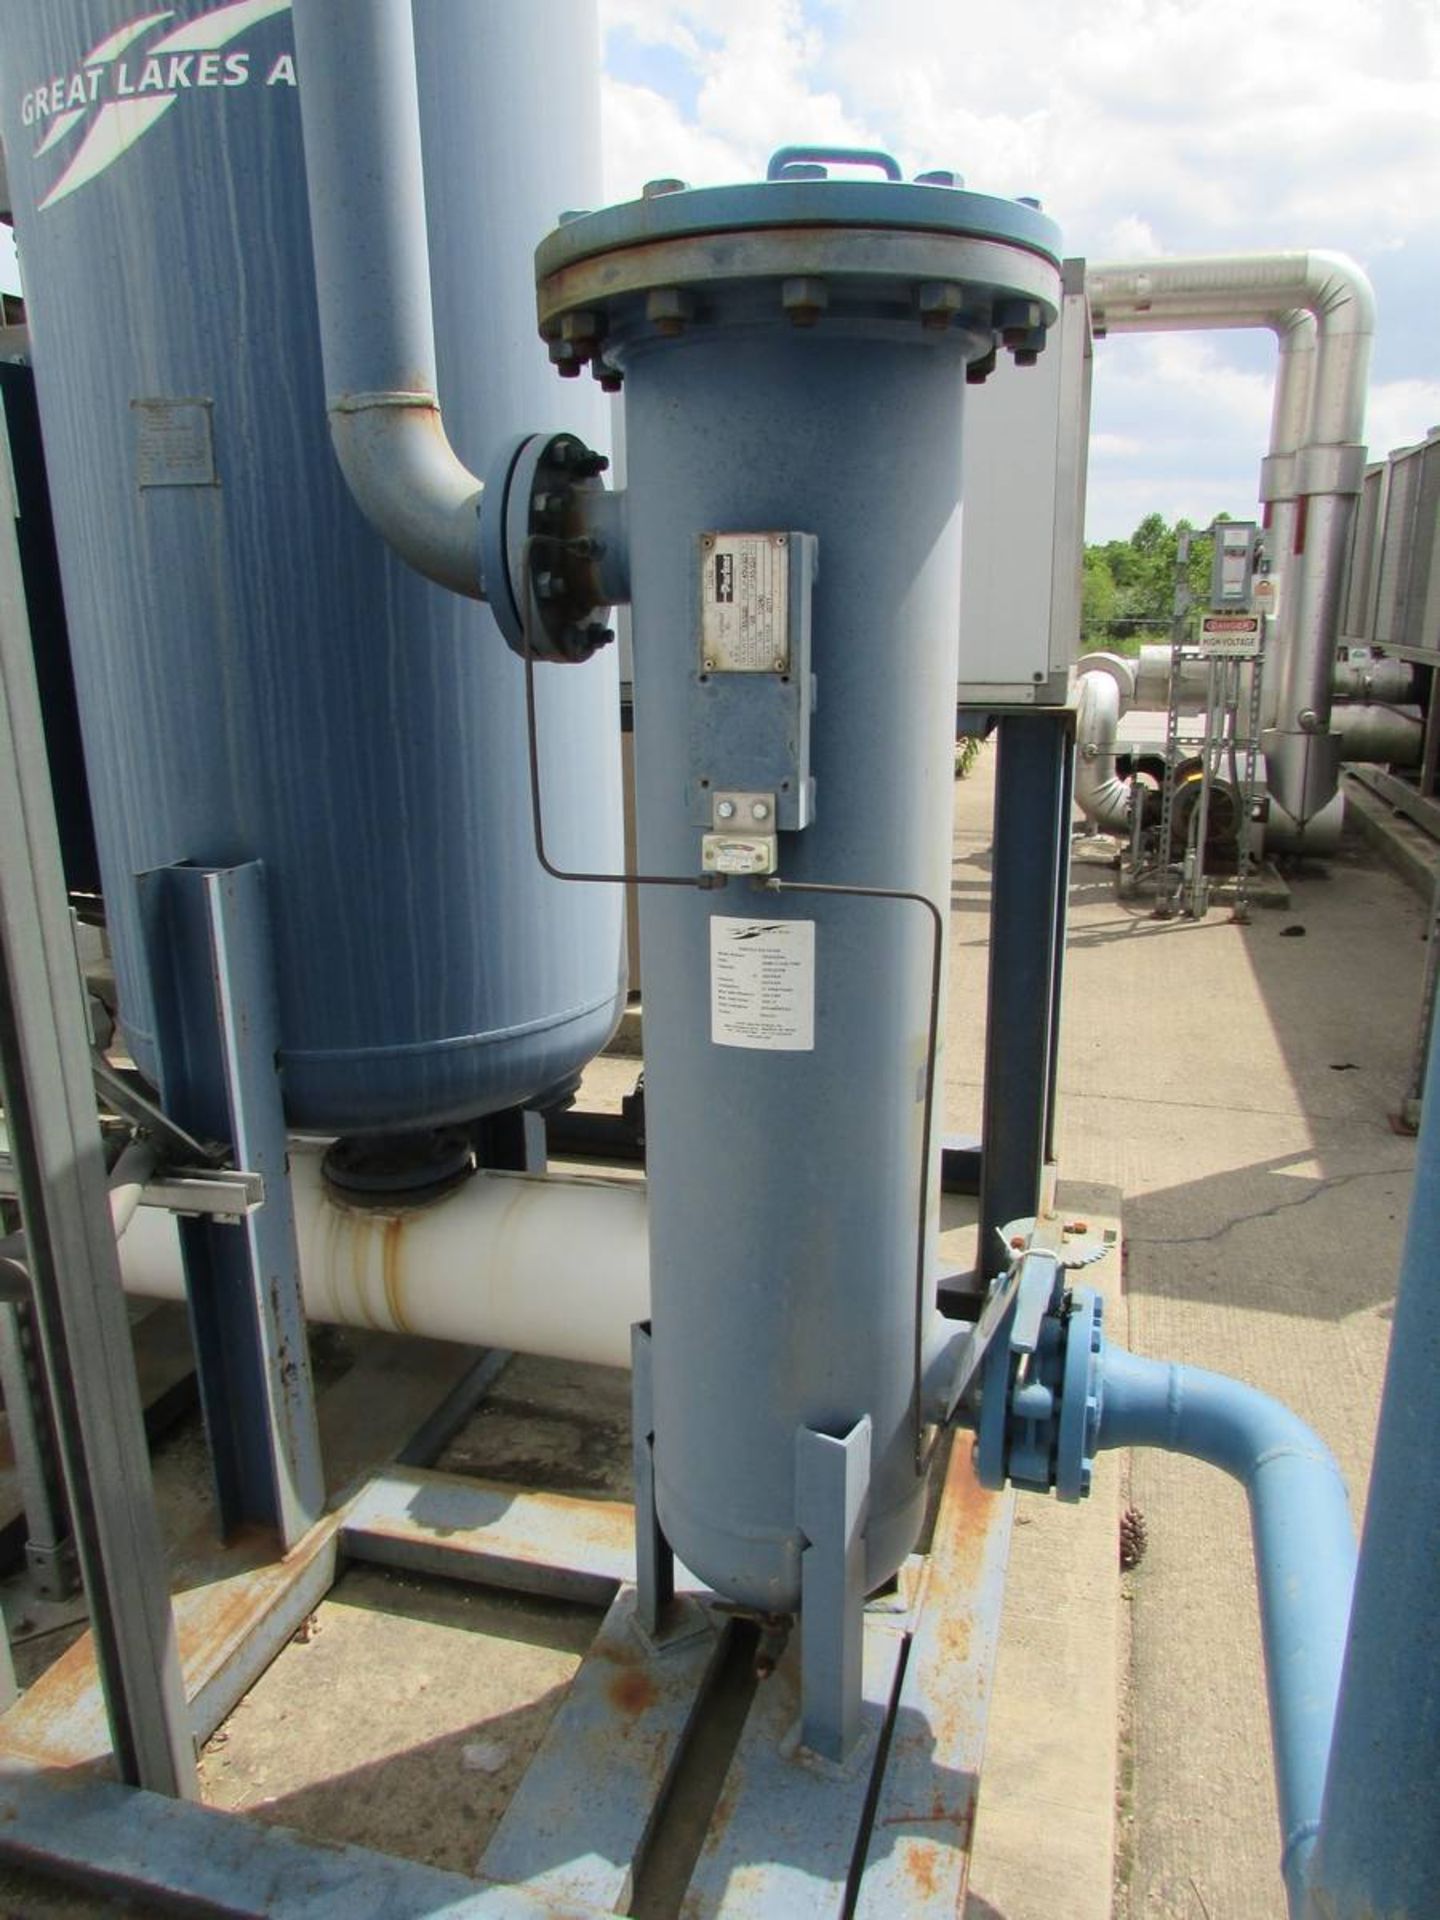 Great Lakes Air GBS-1600N4-436 Regenerative Air Dryer - Image 9 of 15